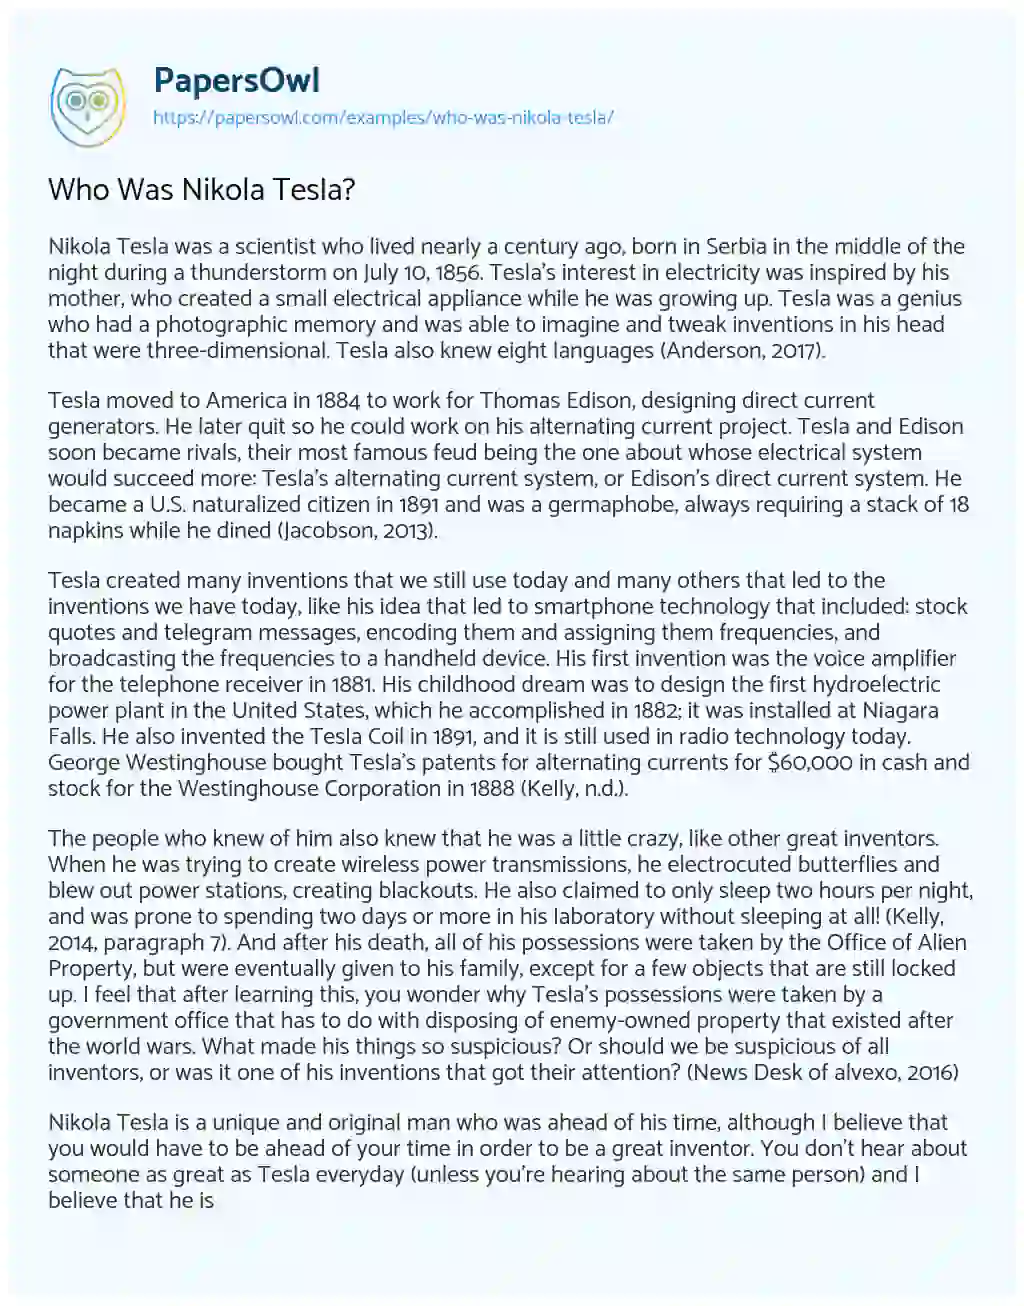 Who was Nikola Tesla? essay